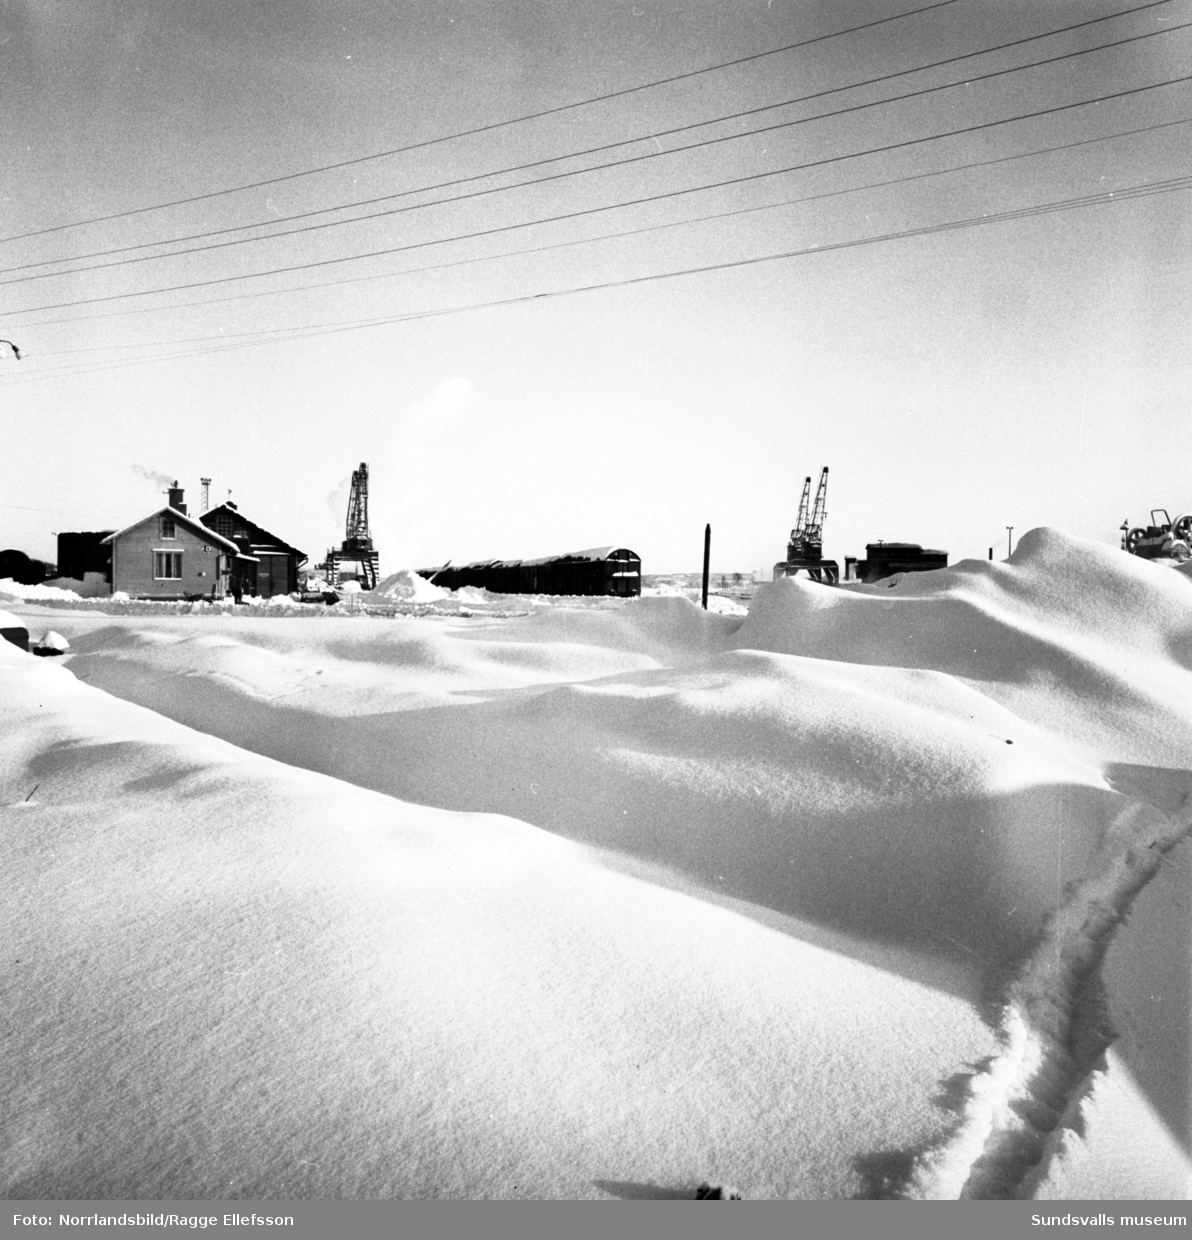 Hamnen är tom på båtar i början av februari den rekordkalla vintern 1966. Isläget i norr satte stopp för all sjötrafik. Samma dag som de här bilderna tas i Sundsvall uppmättes rekordnoteringen -53 grader i Vuoggatjålme, Lappland.